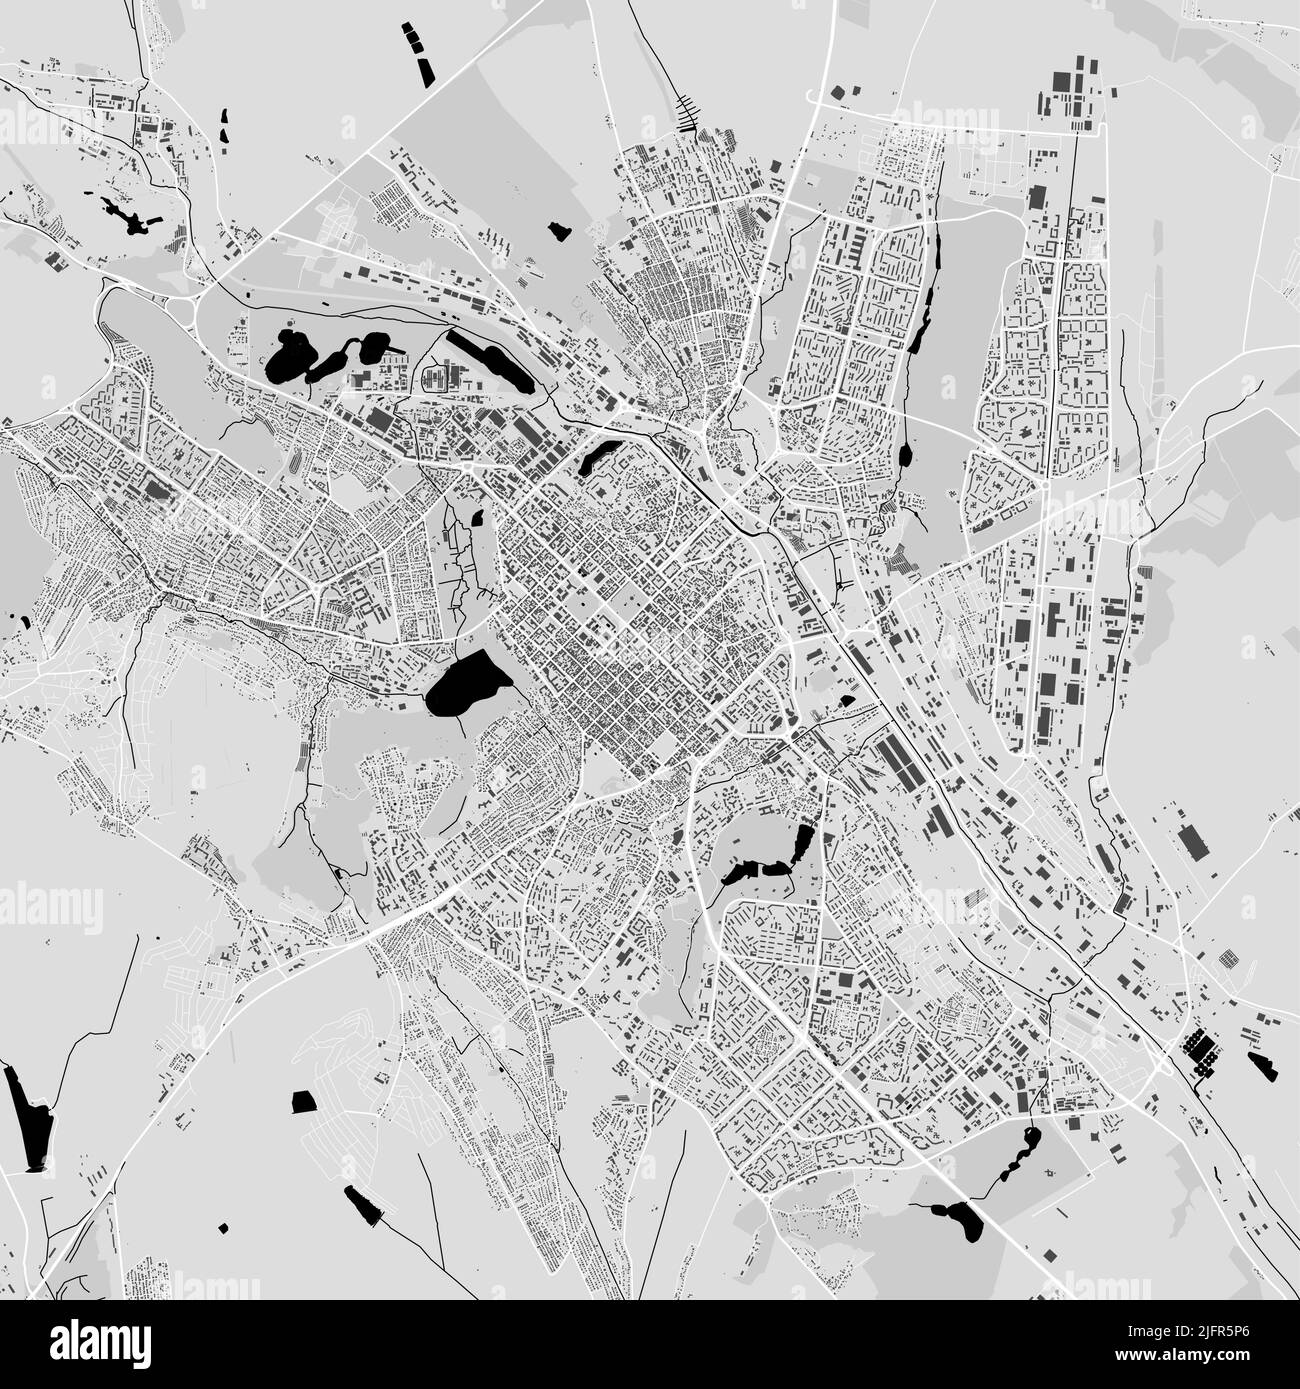 Stadtbild-Vektorkarte von Chisinau. Vektorgrafik, Chisinau Karte Graustufen schwarz-weiß Kunstposter. Straßenkarte mit Straßen, Metropolregion c Stock Vektor